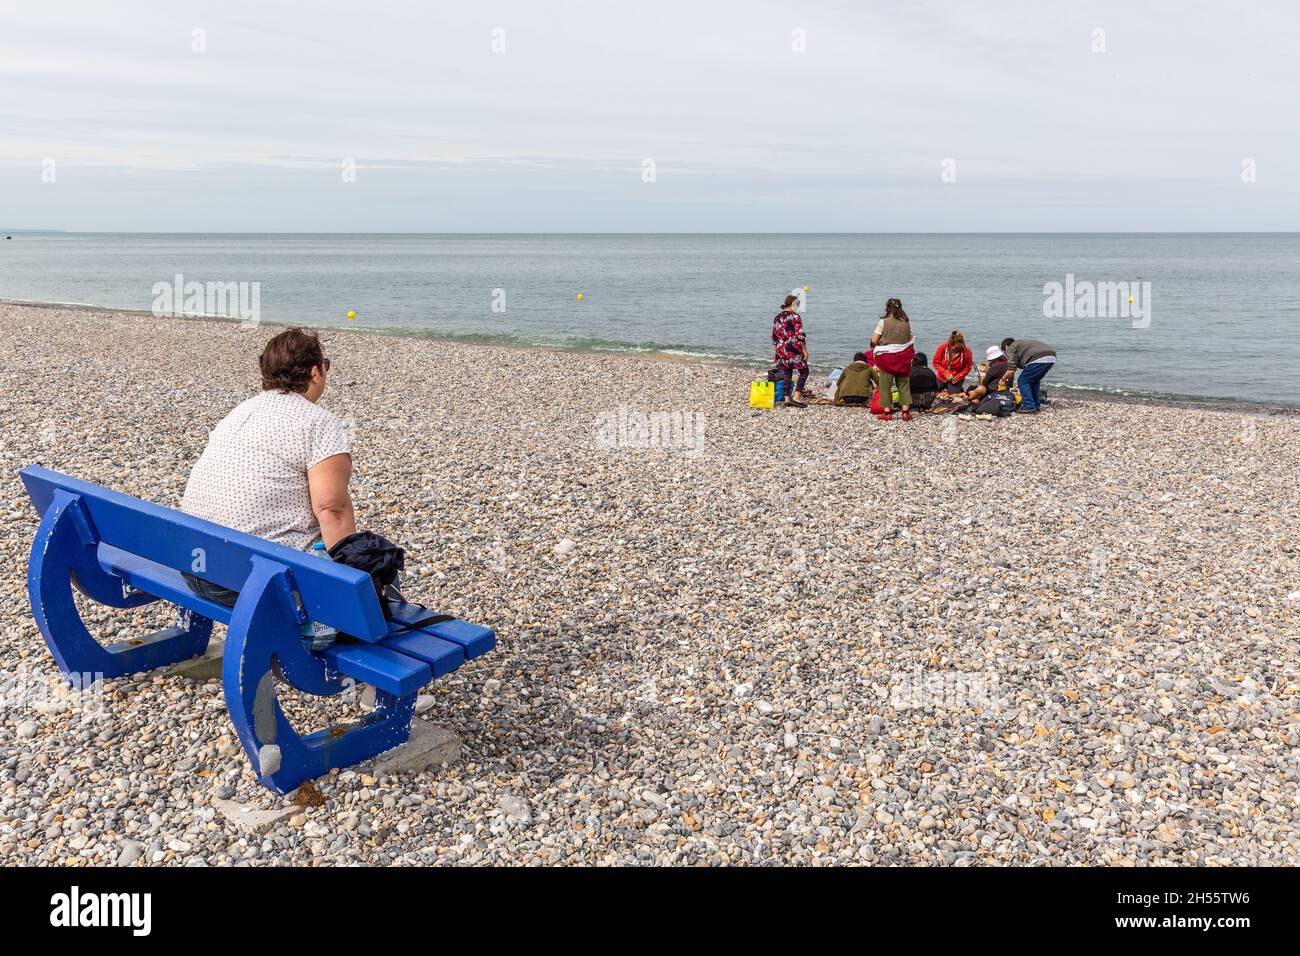 Signora seduto su una panca pubblica blu sulla spiaggia di ciottoli di le Tréport, osservando un gruppo di persone al bordo dell'acqua. Le Tréport, Francia Foto Stock